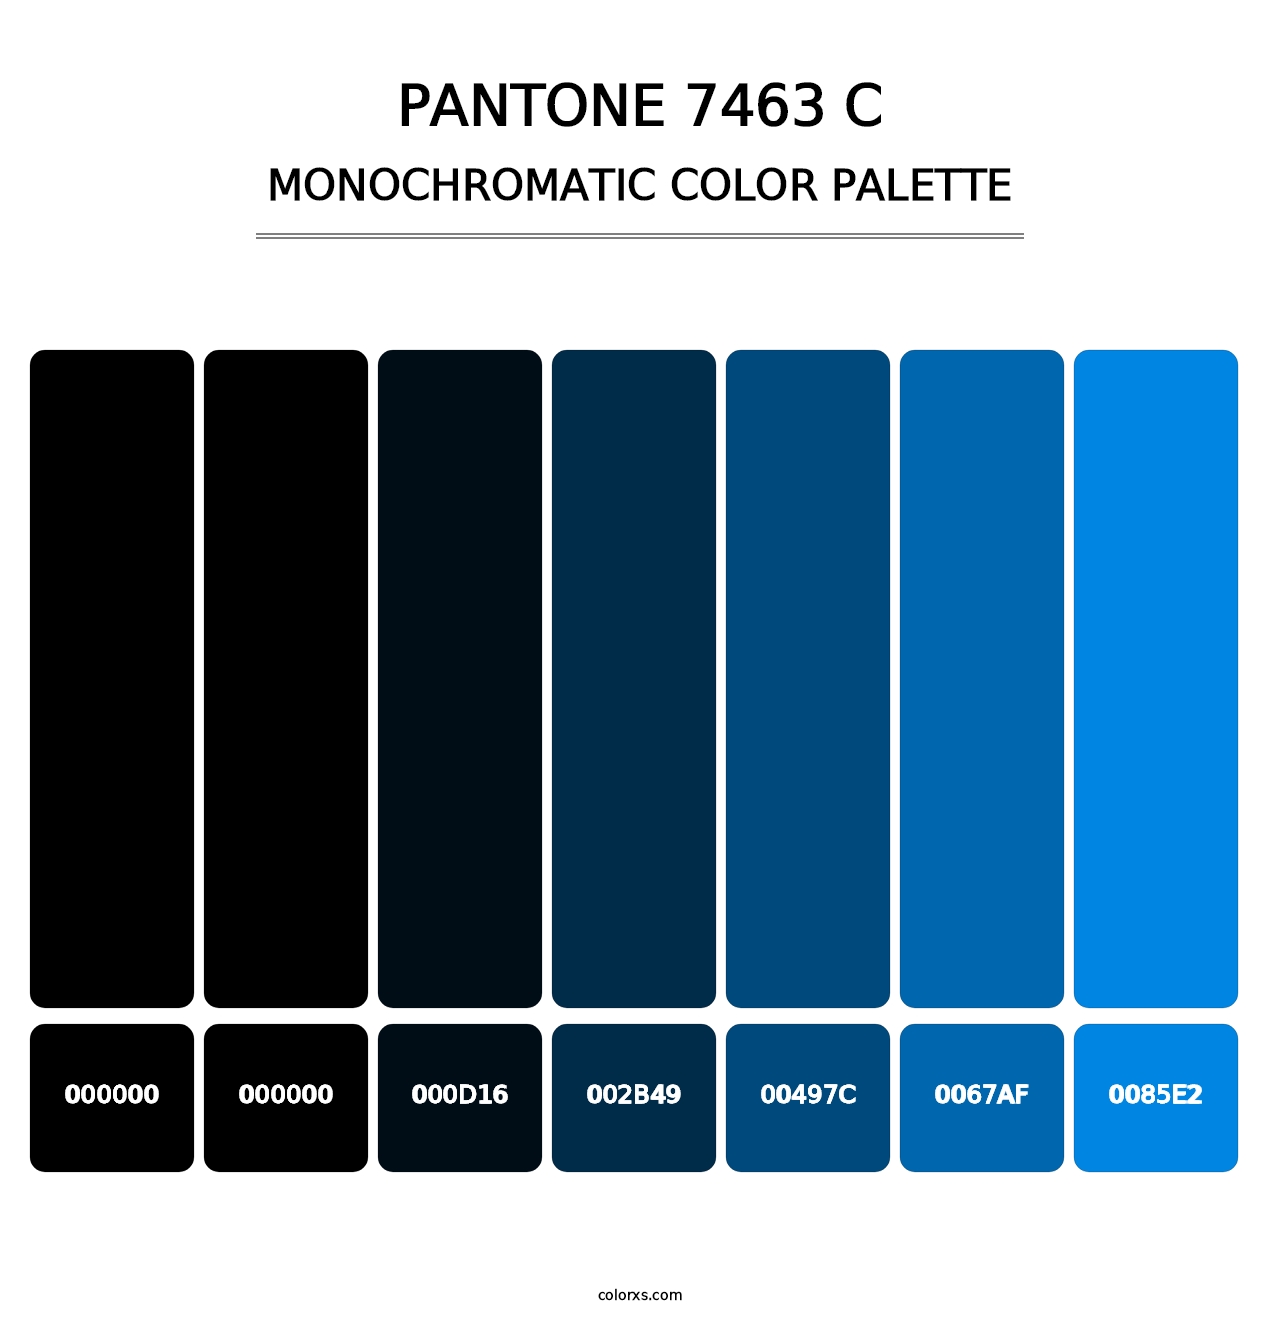 PANTONE 7463 C - Monochromatic Color Palette